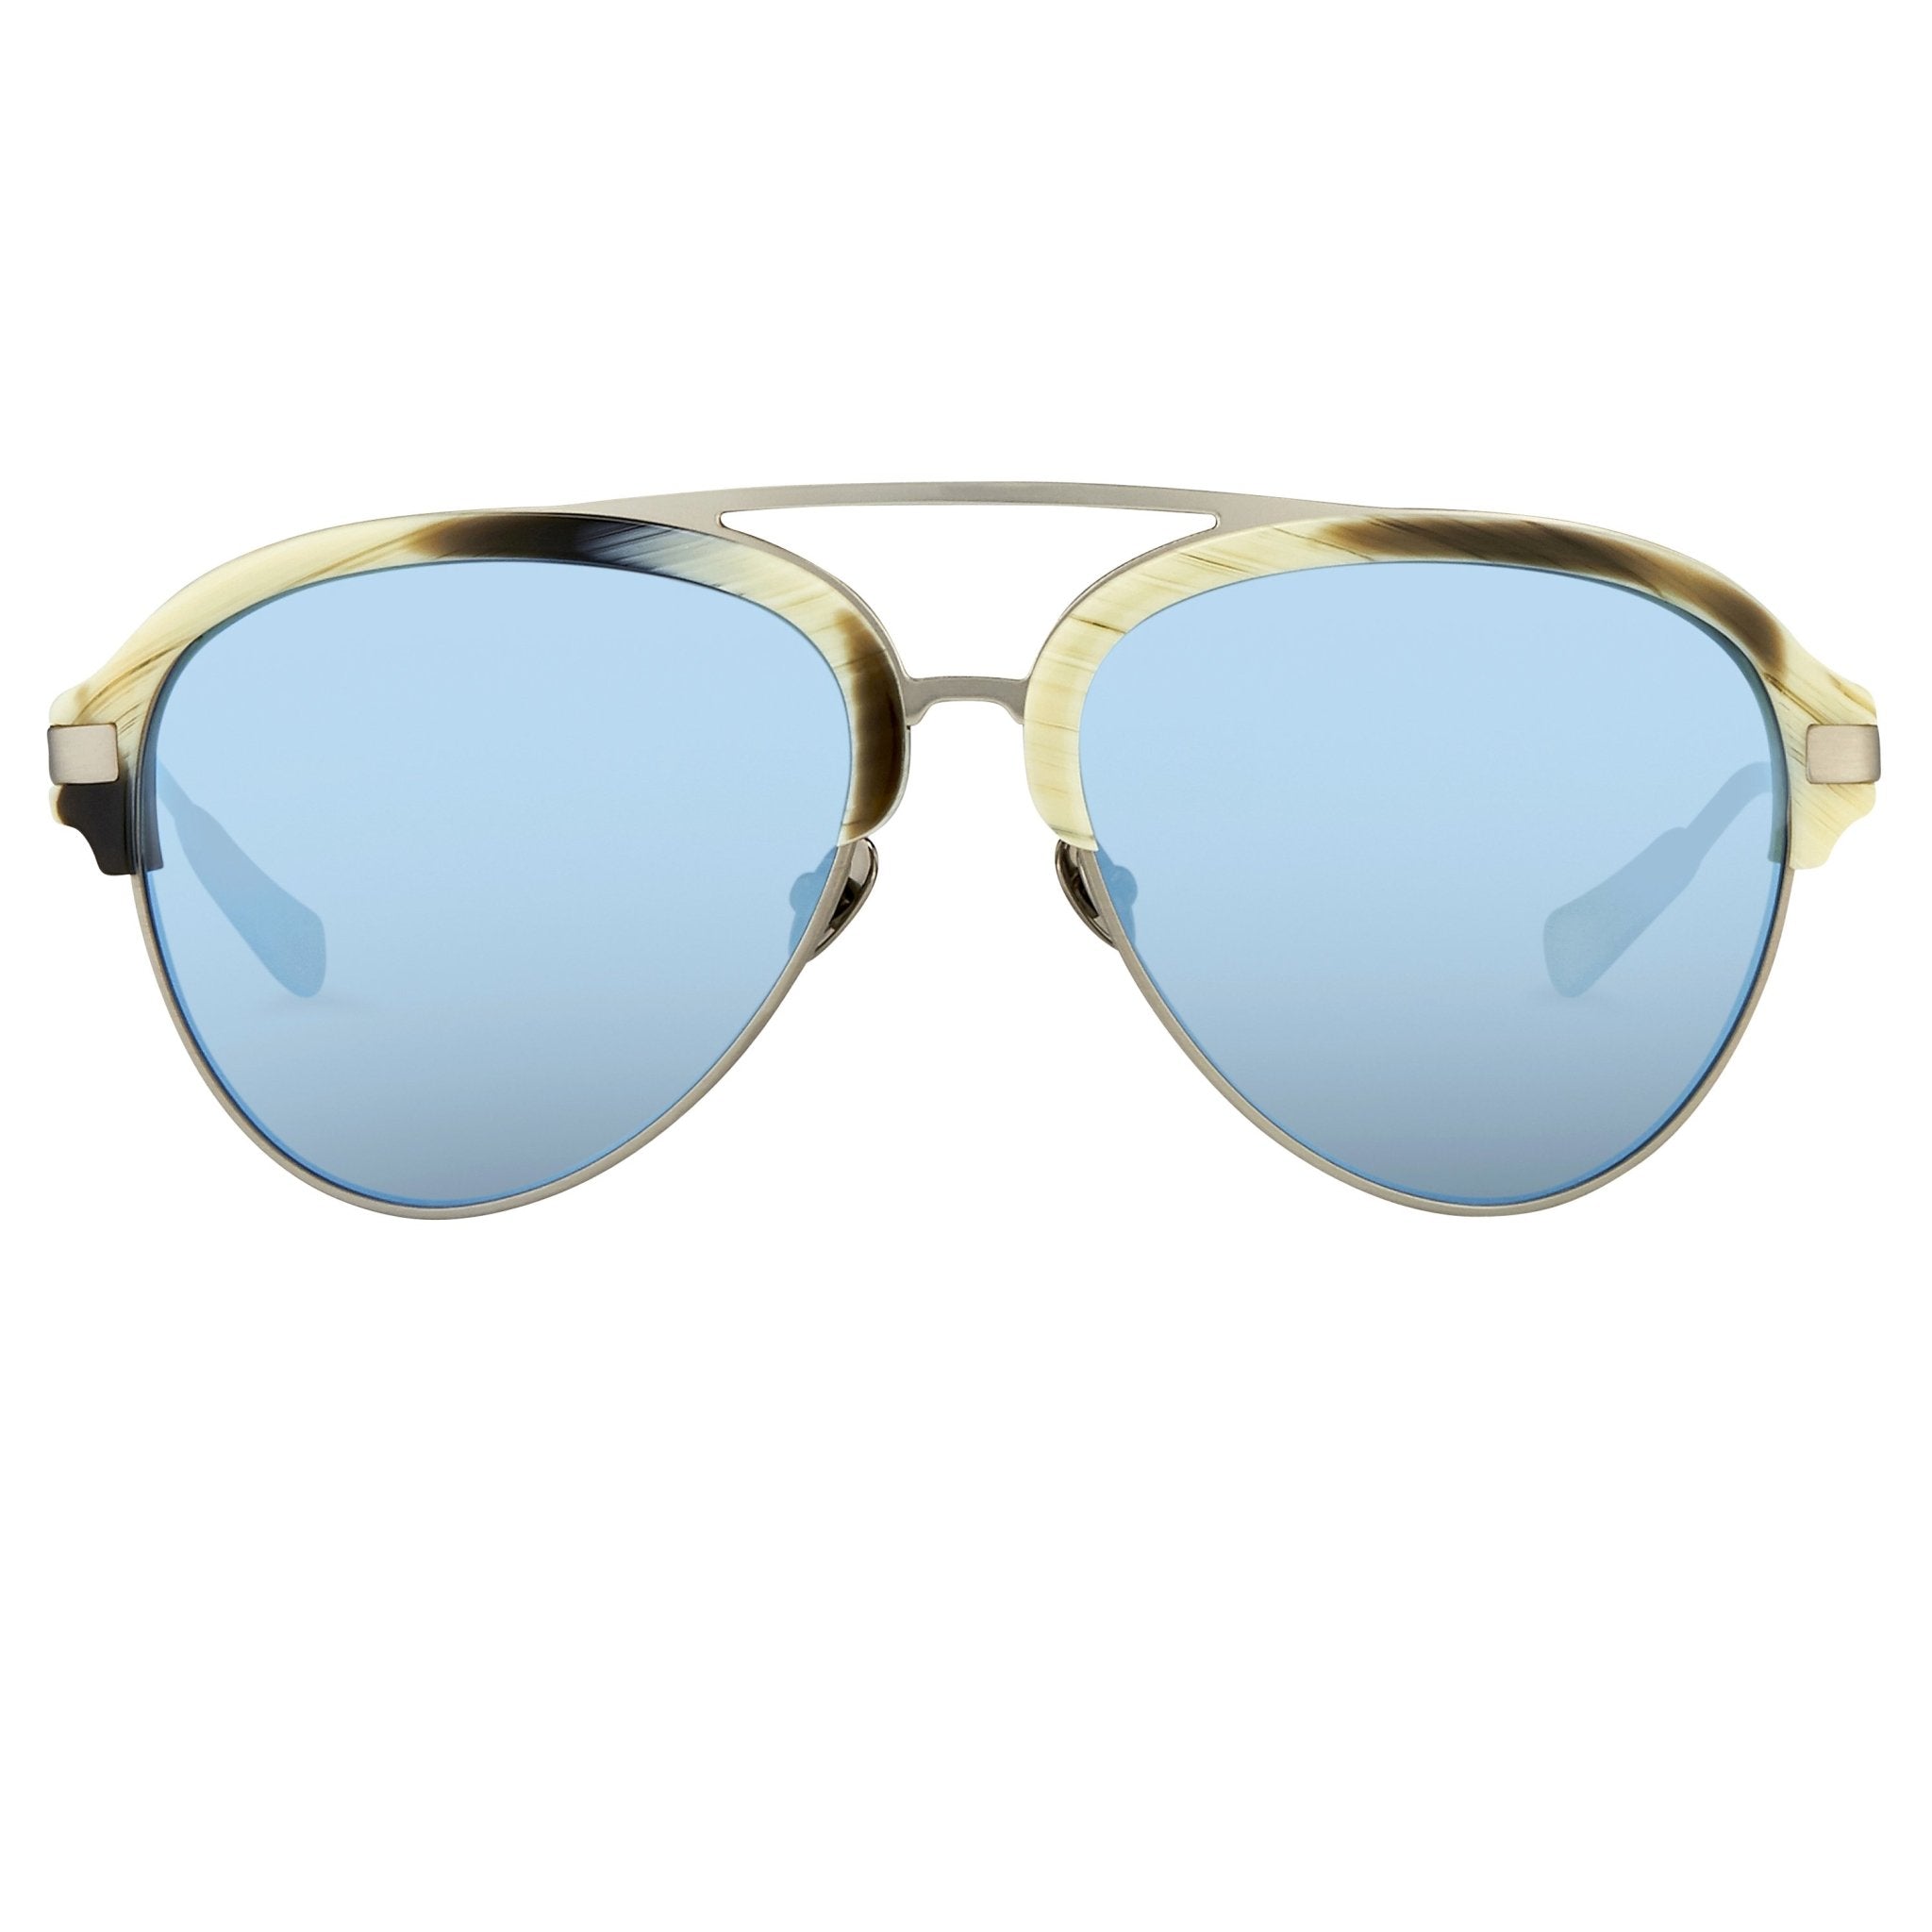 Kris Van Assche Sunglasses D-Frame Brown and Blue